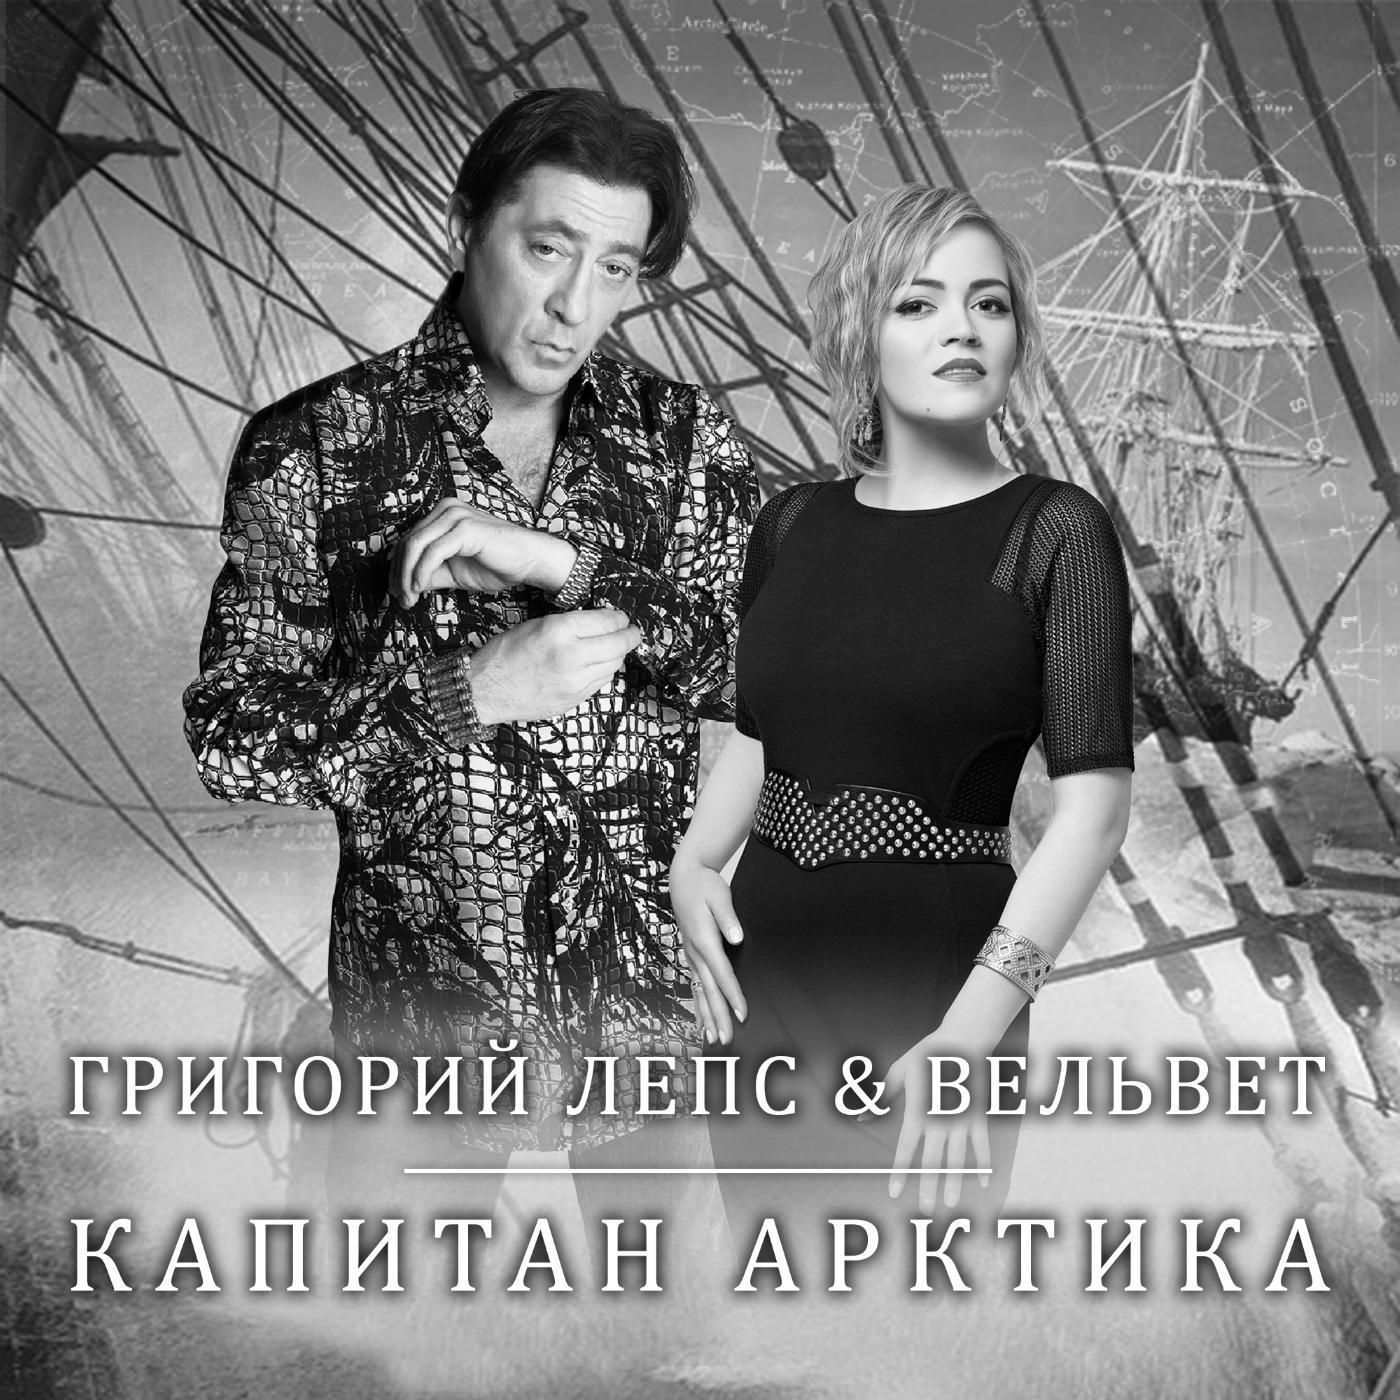 Григорий Лепс & Вельвеt - Капитан арктика